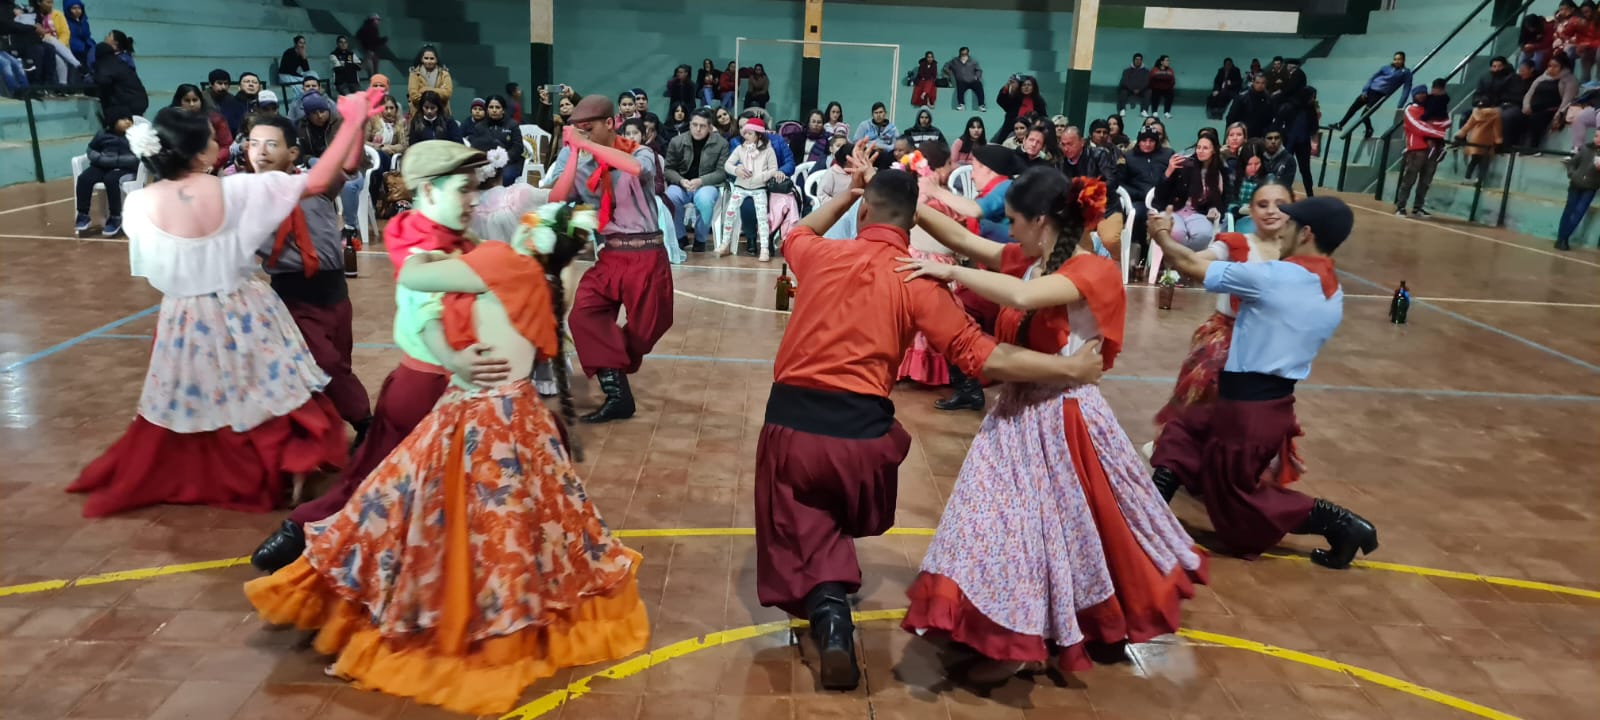 bailarines de la Escuela Municipal de Danzas “Huellas de mi tierra”, de Guaraní, y la Escuela de Danzas de Oberá, “Alma gaucha”